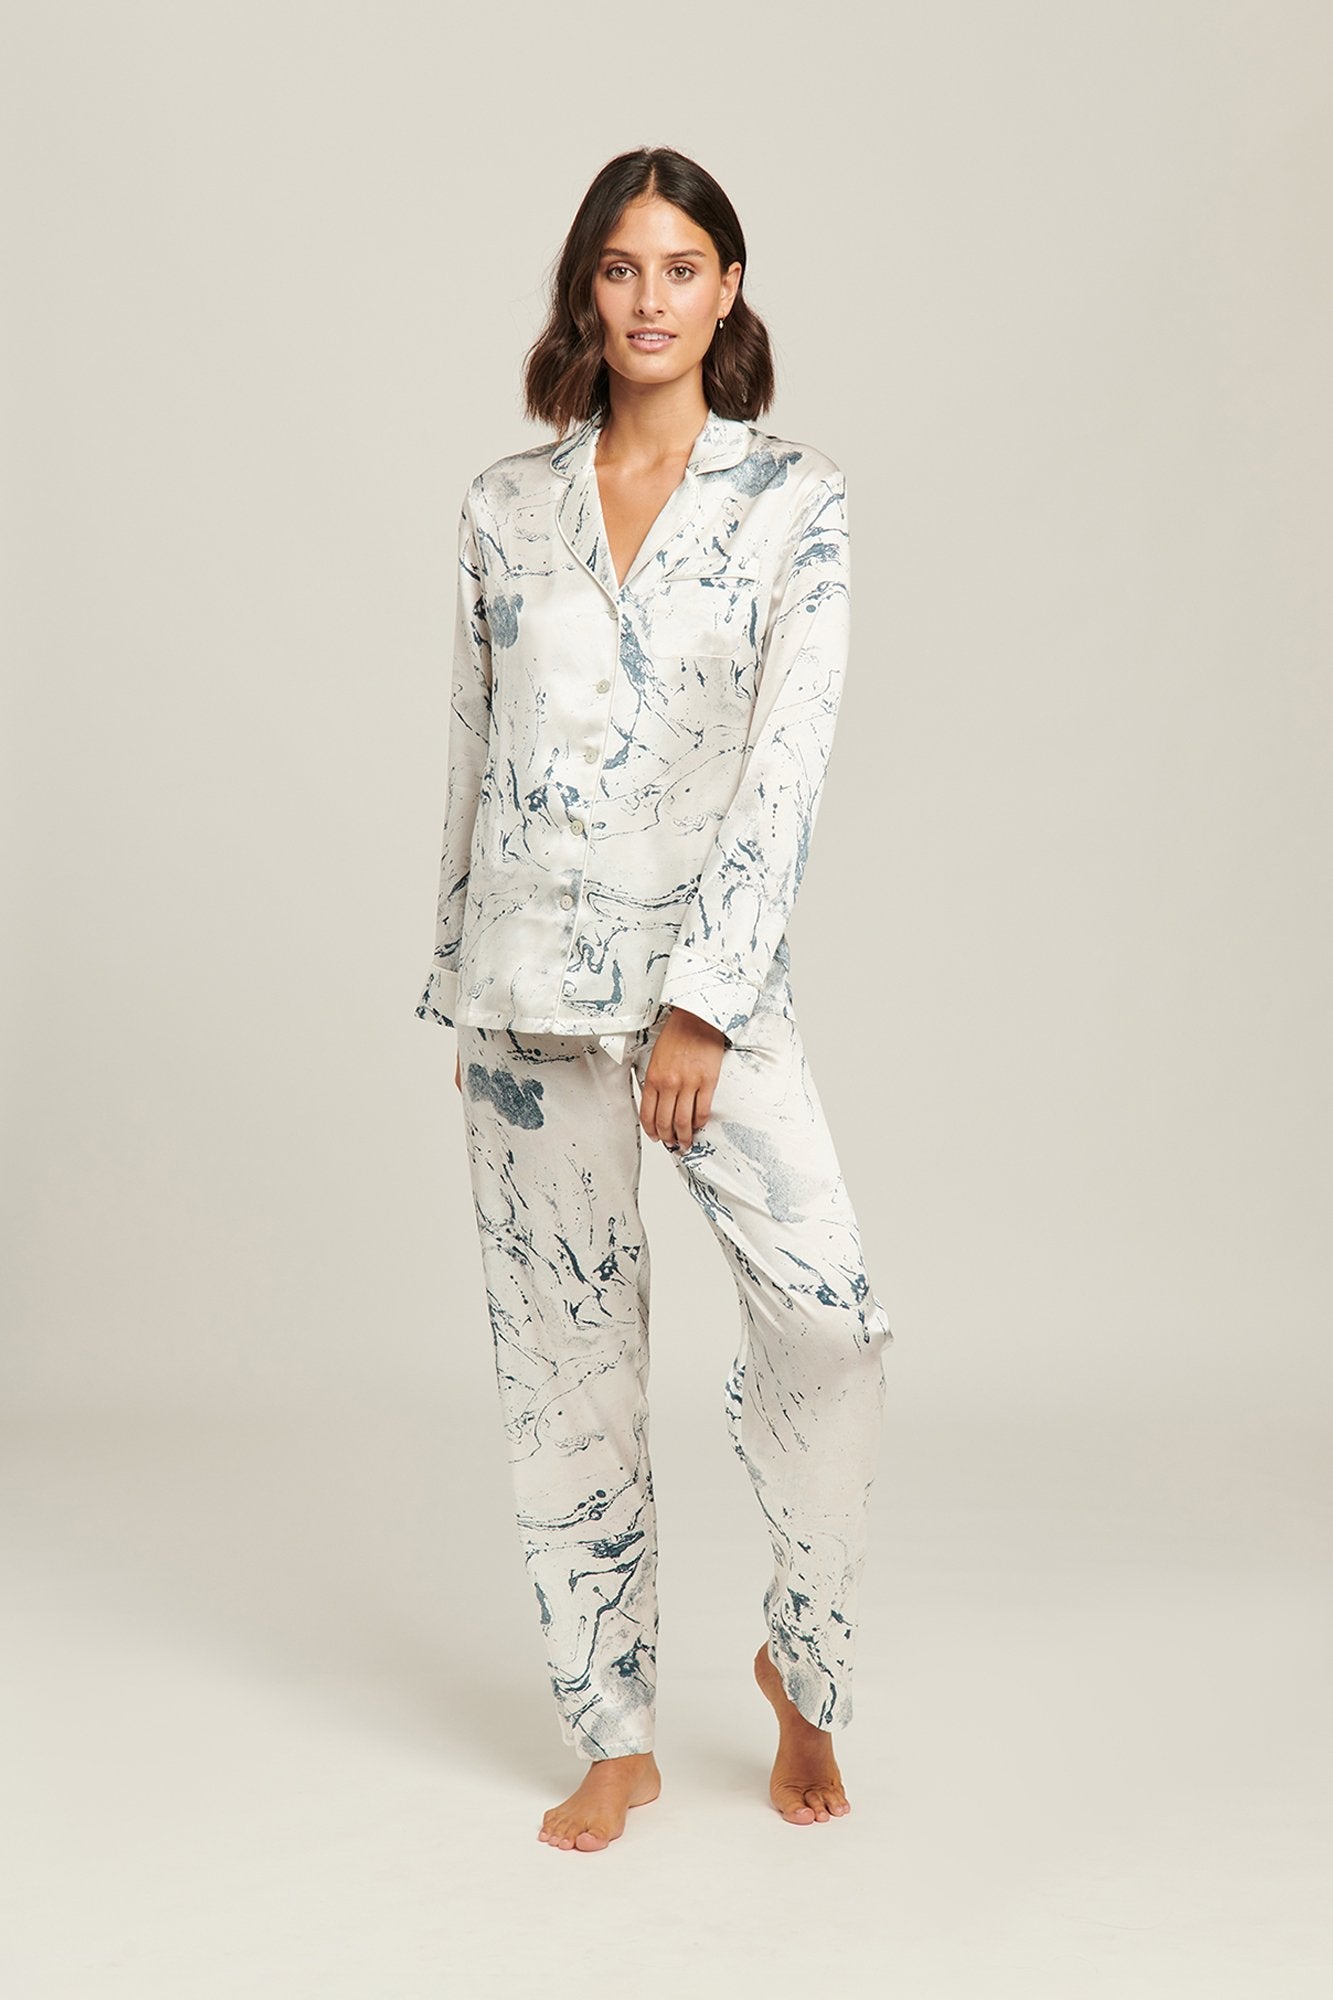 Carrara Marble Silk Pajama